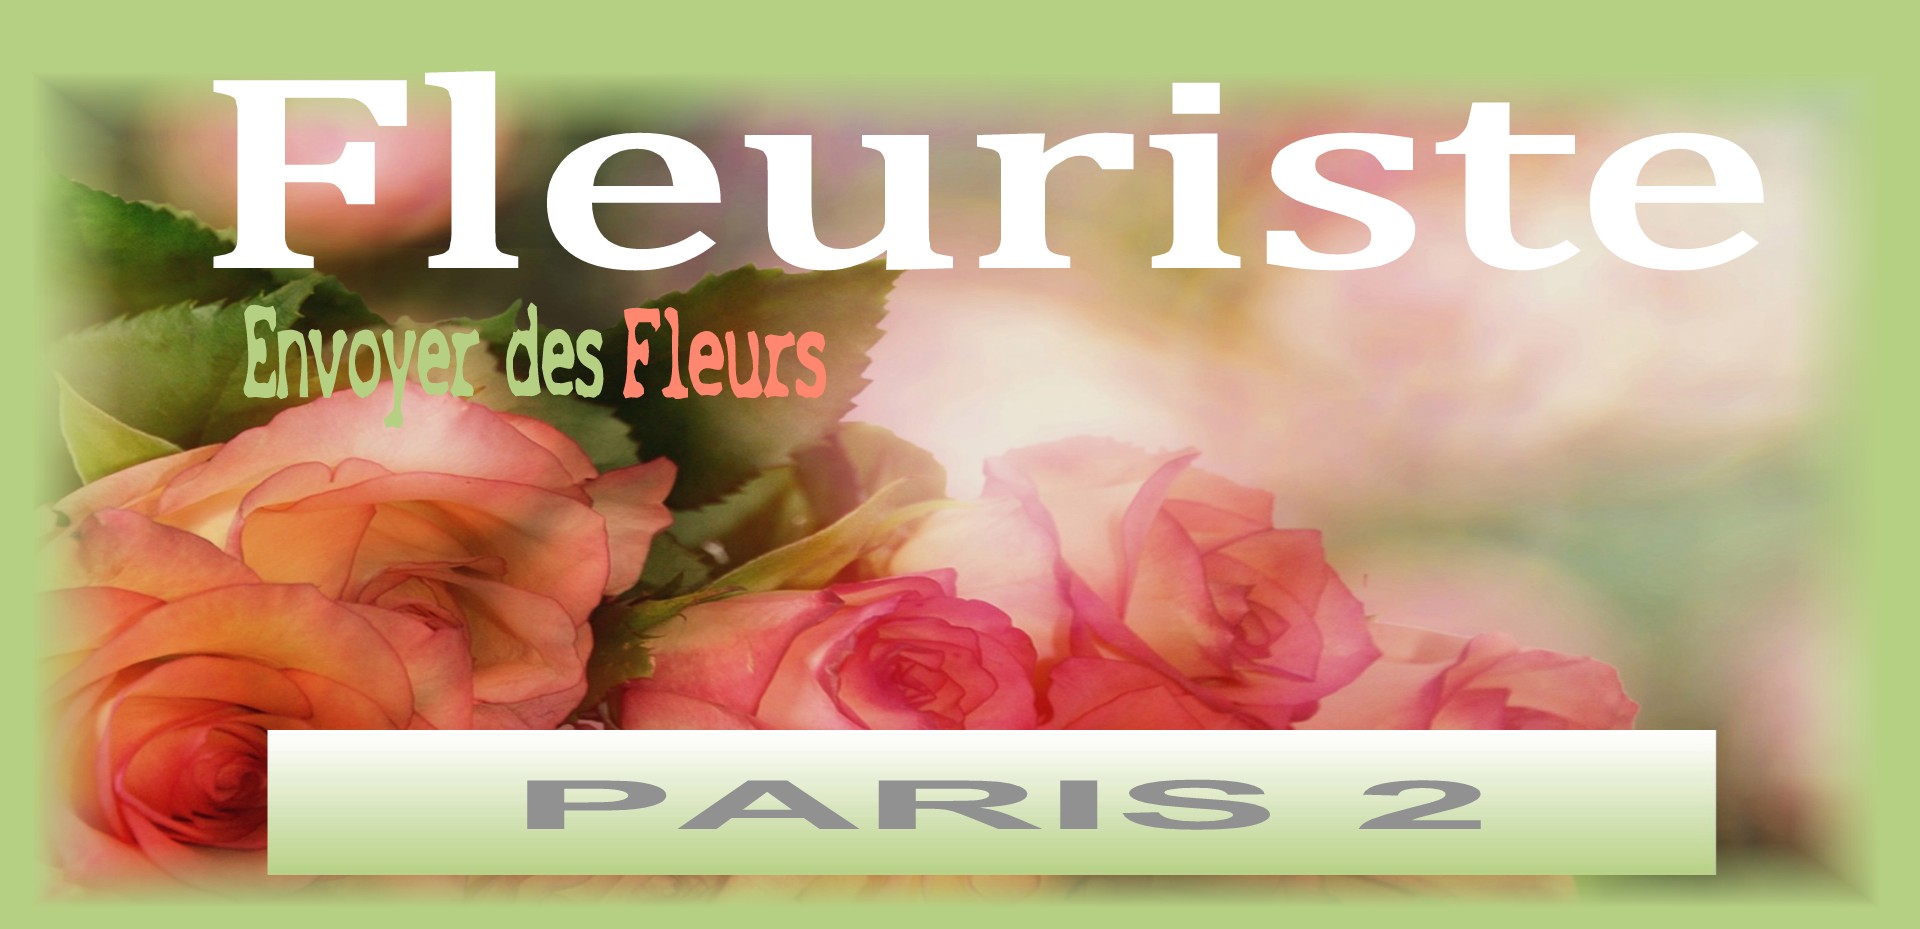 FLEURISTE PARIS 2  - LIVRAISON DE FLEURS PARIS 2